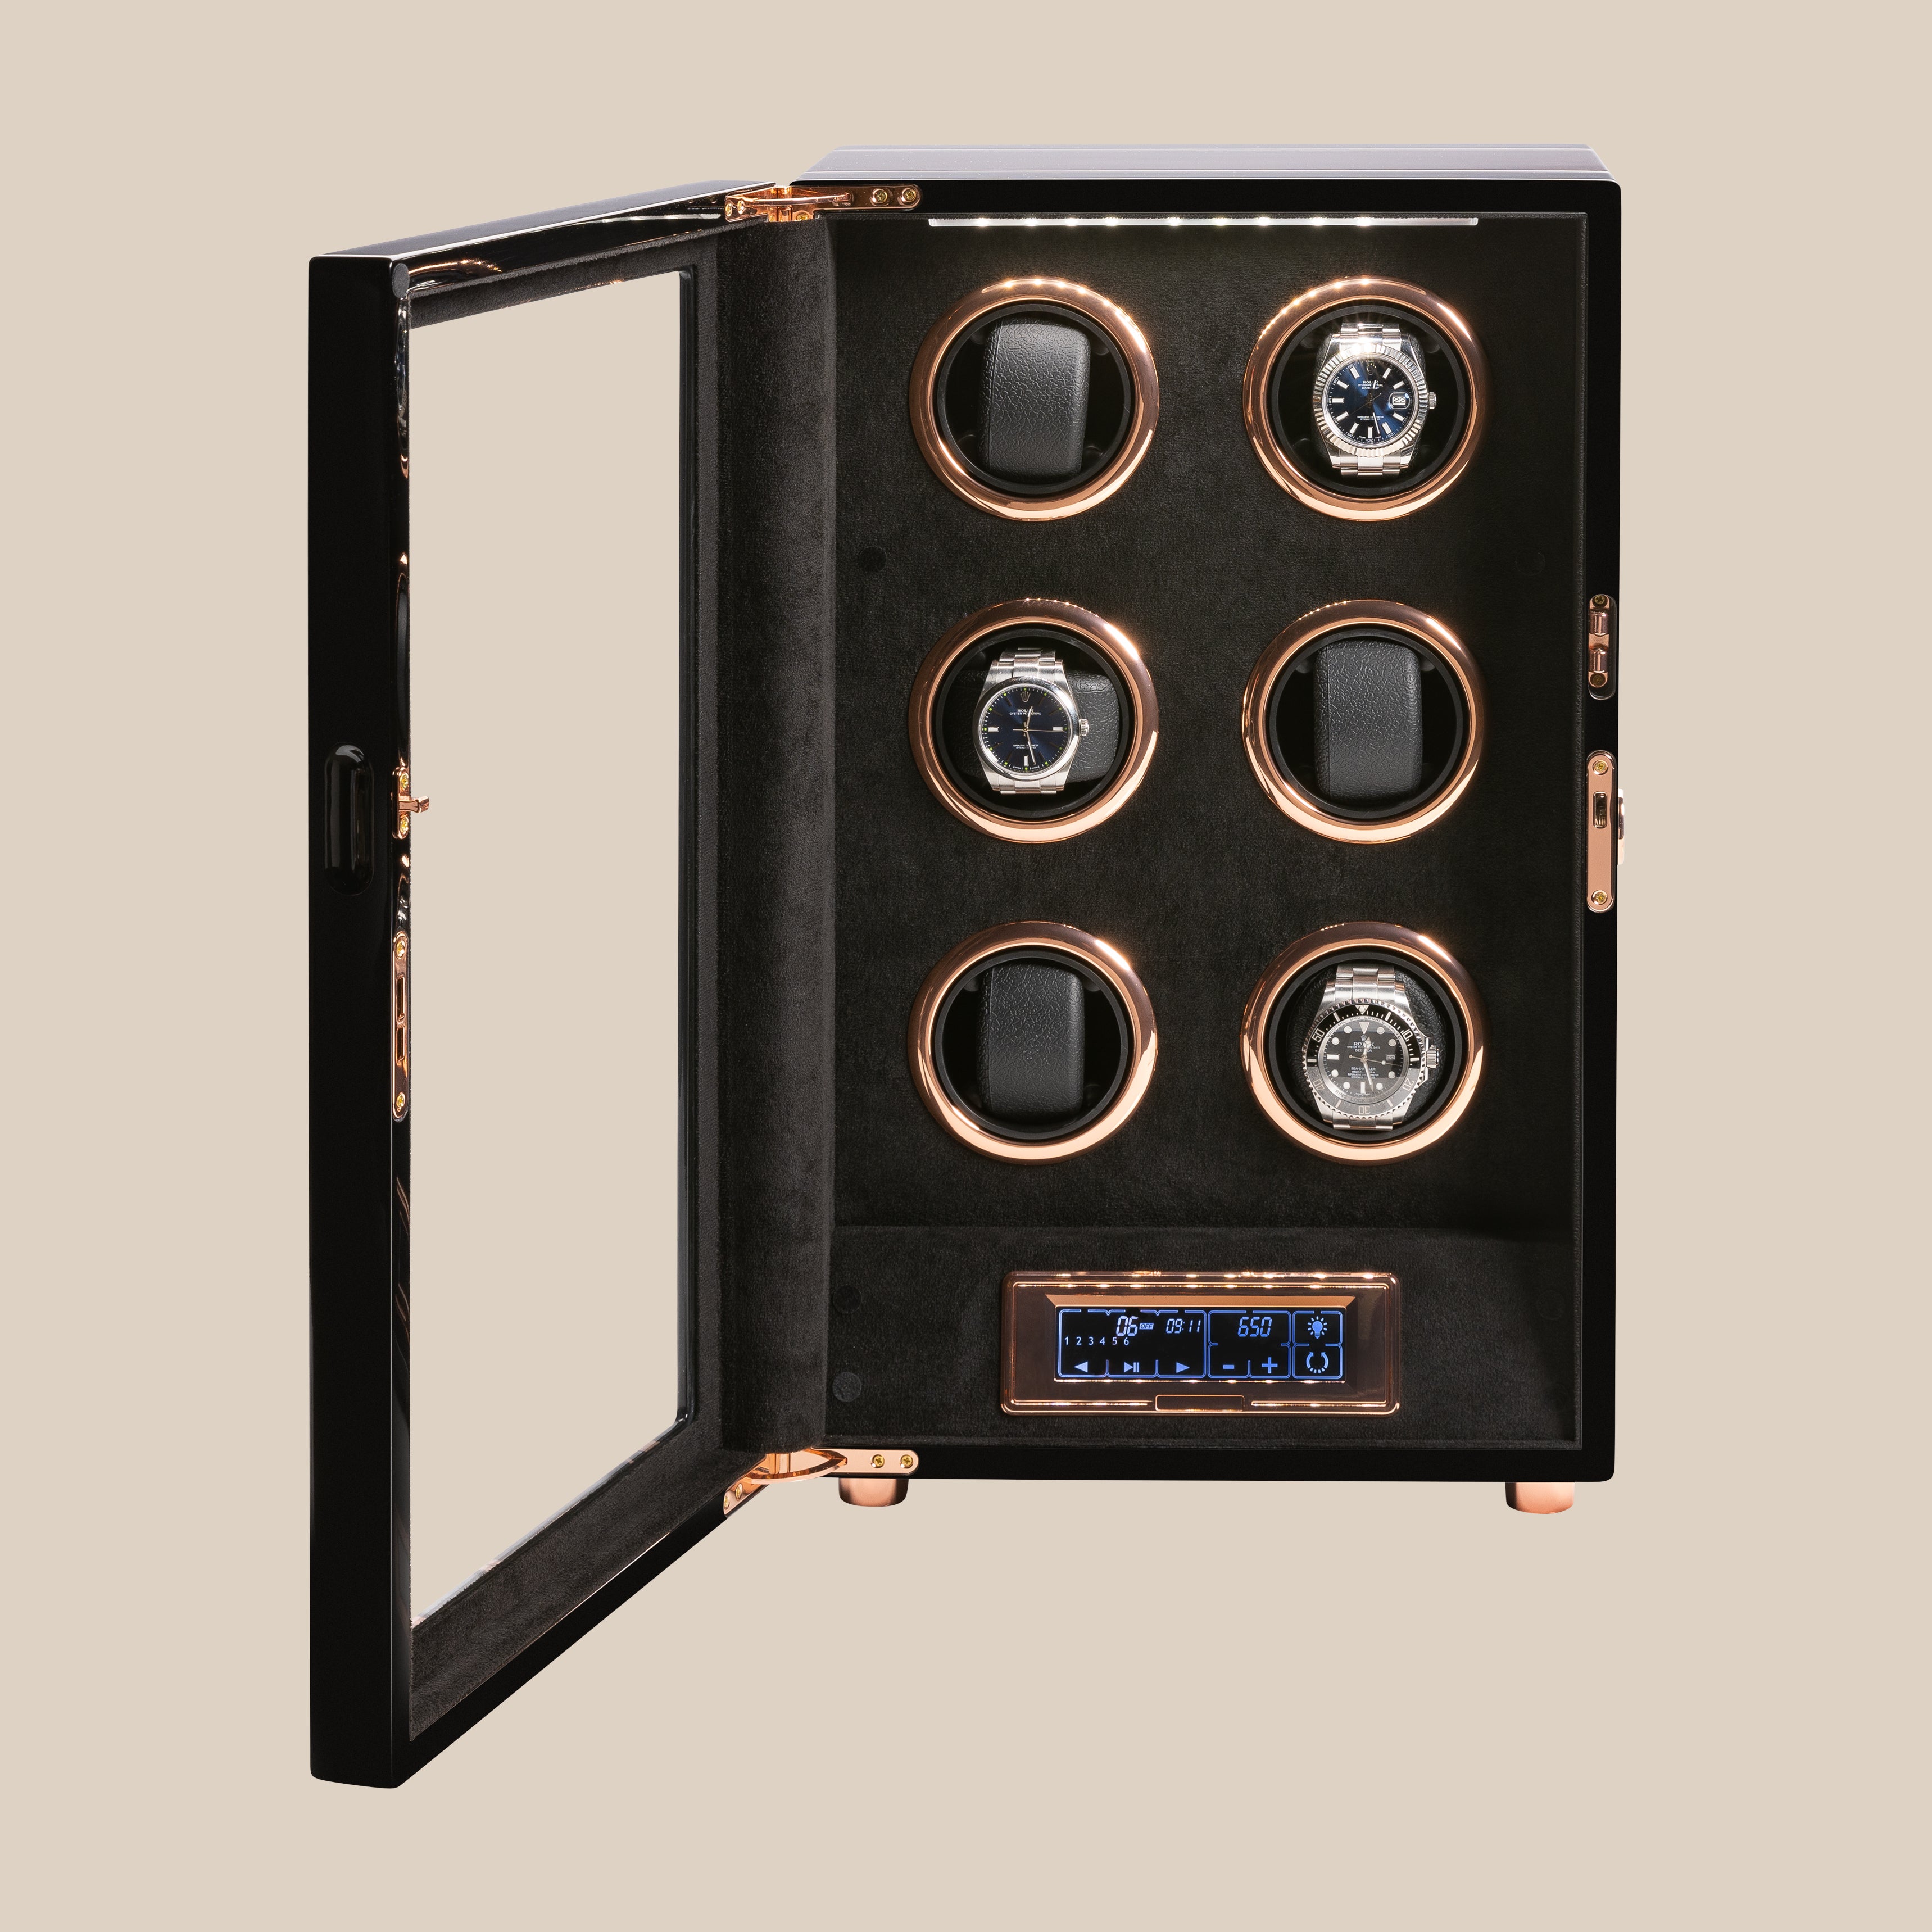 Vitrina móvil WW109 - 6 relojes